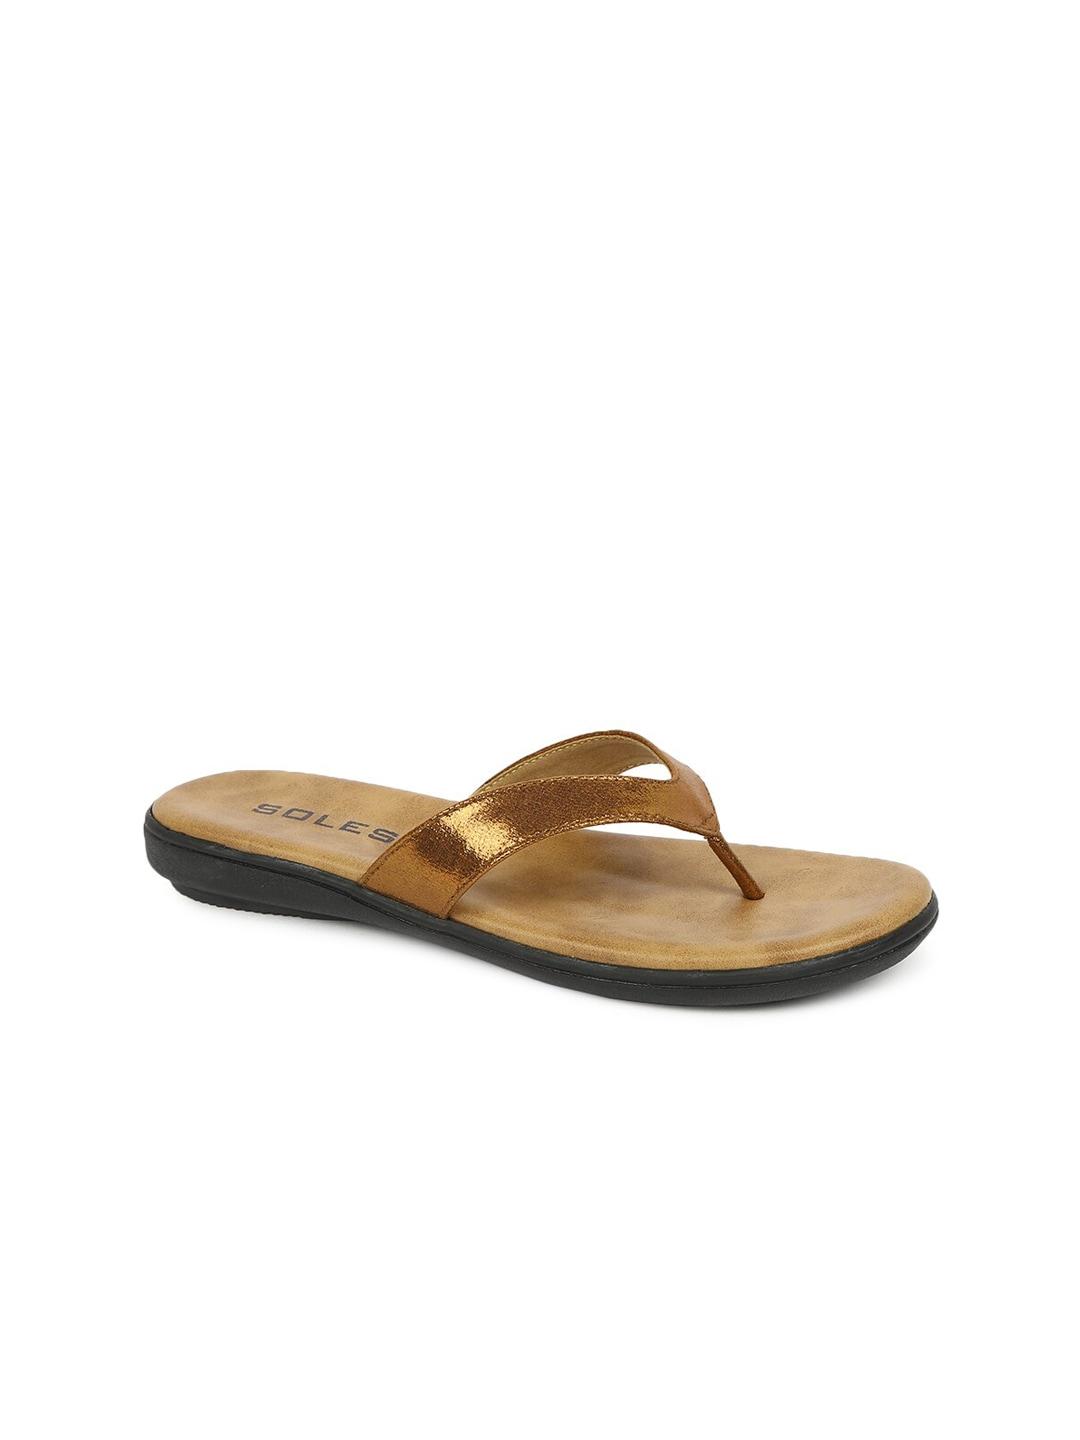 SOLES Women Bronze-Toned T-Strap Flats